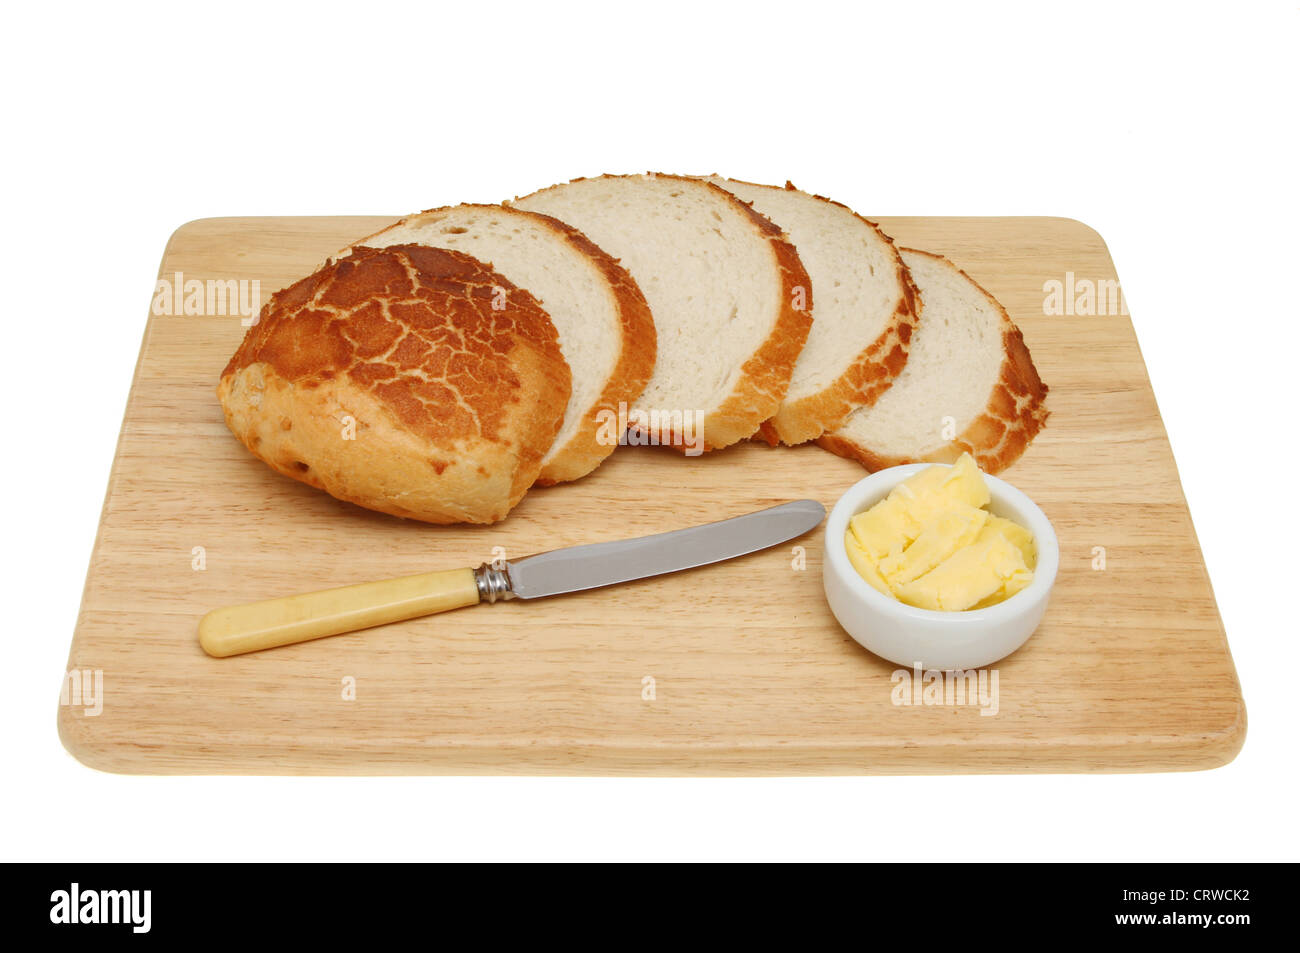 Strati di crosta di pane giraffa con la lama di un coltello e burro su una tavola di legno isolata contro bianco Foto Stock